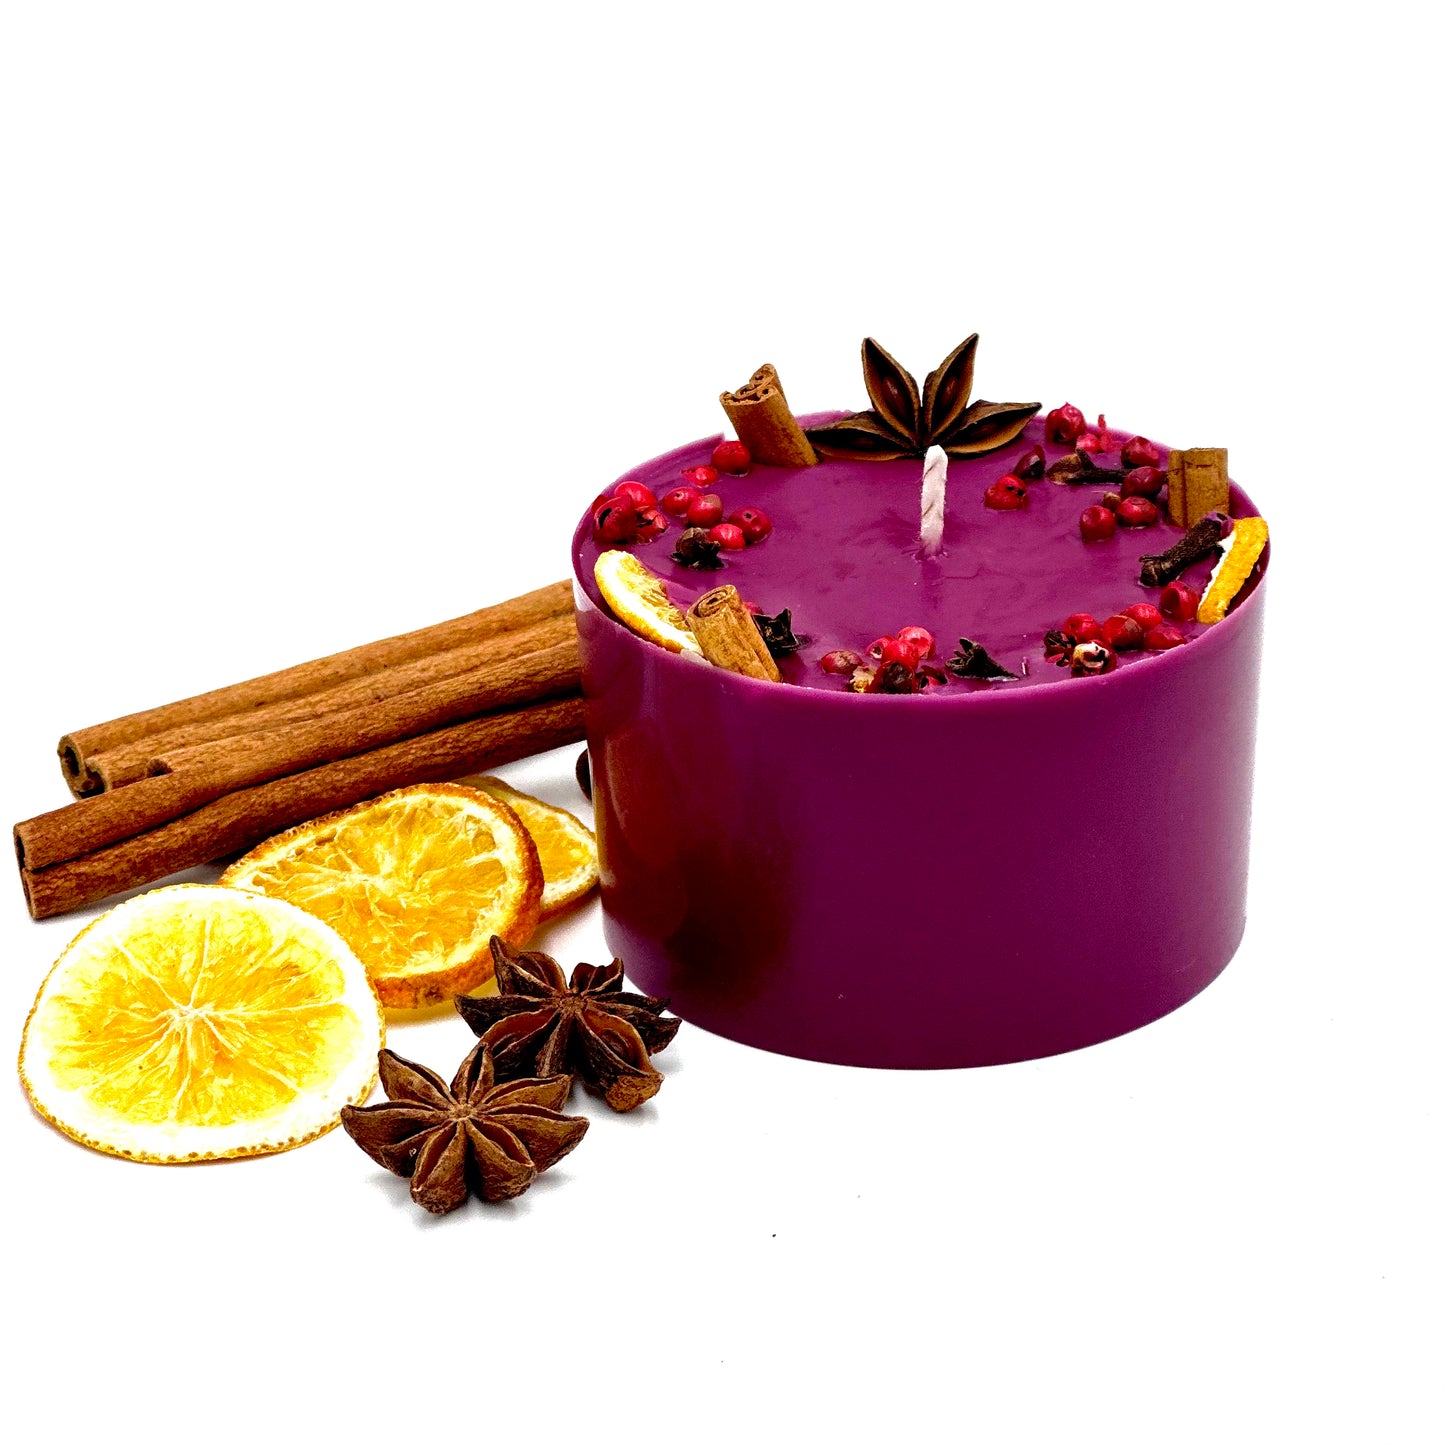 Dabīgā sojas vaska svece ar “Karstvīna” aromātu, kurā dominē vīnogas, kanēļa un muskata notis.